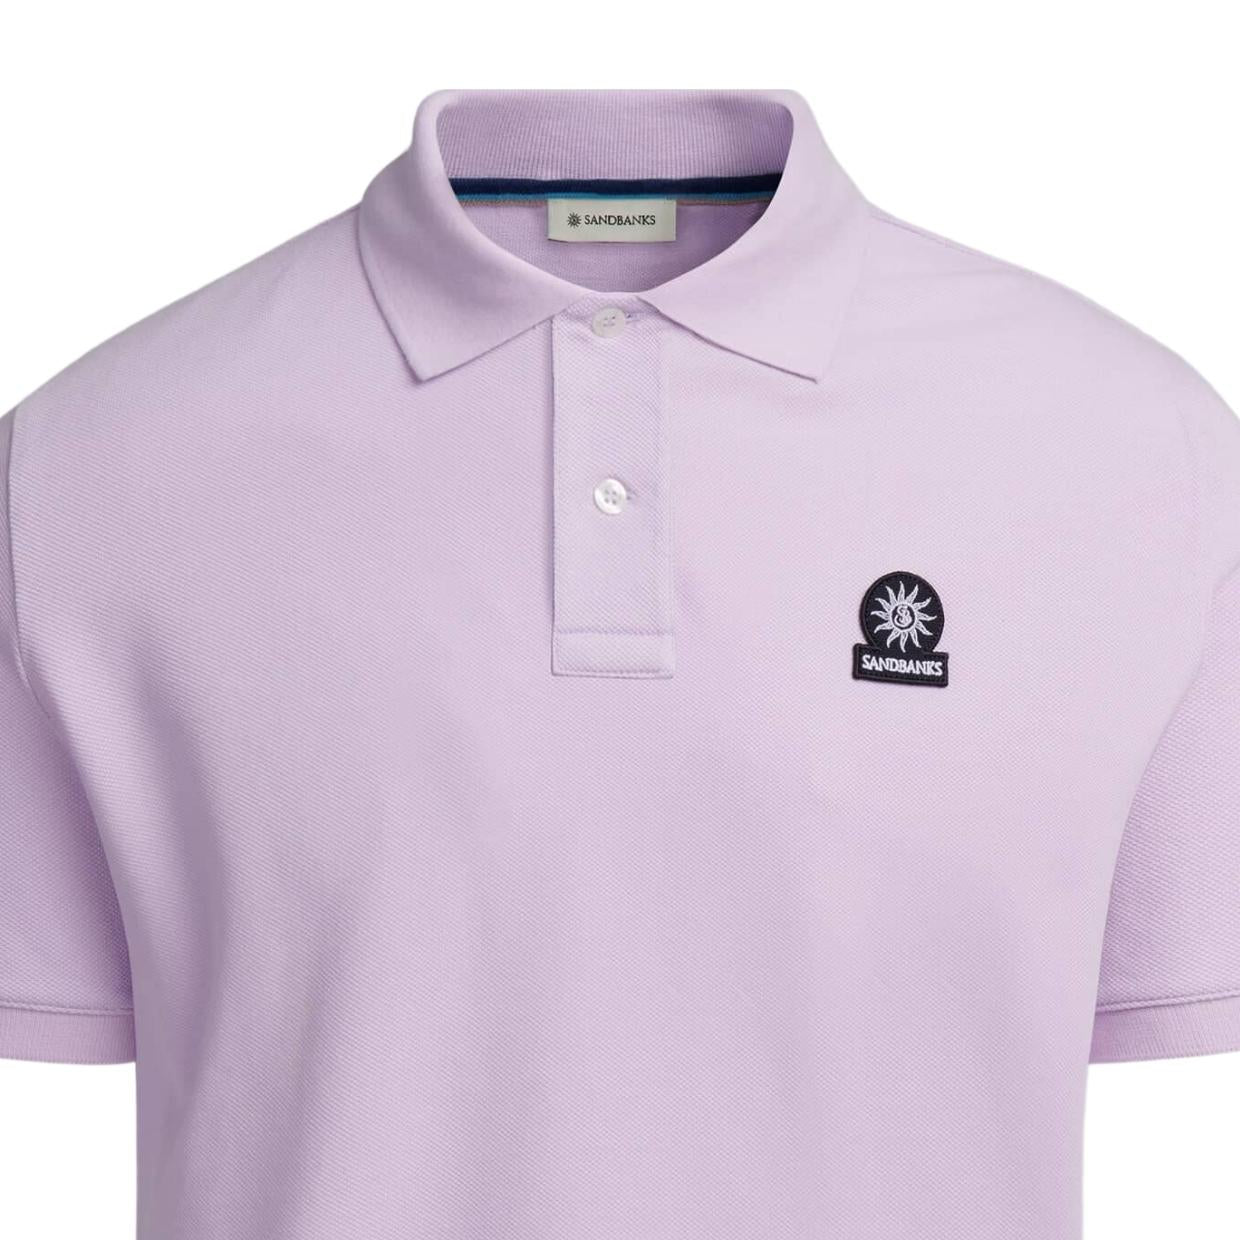 Sandbanks Badge Logo Pique Lilac Polo Shirt